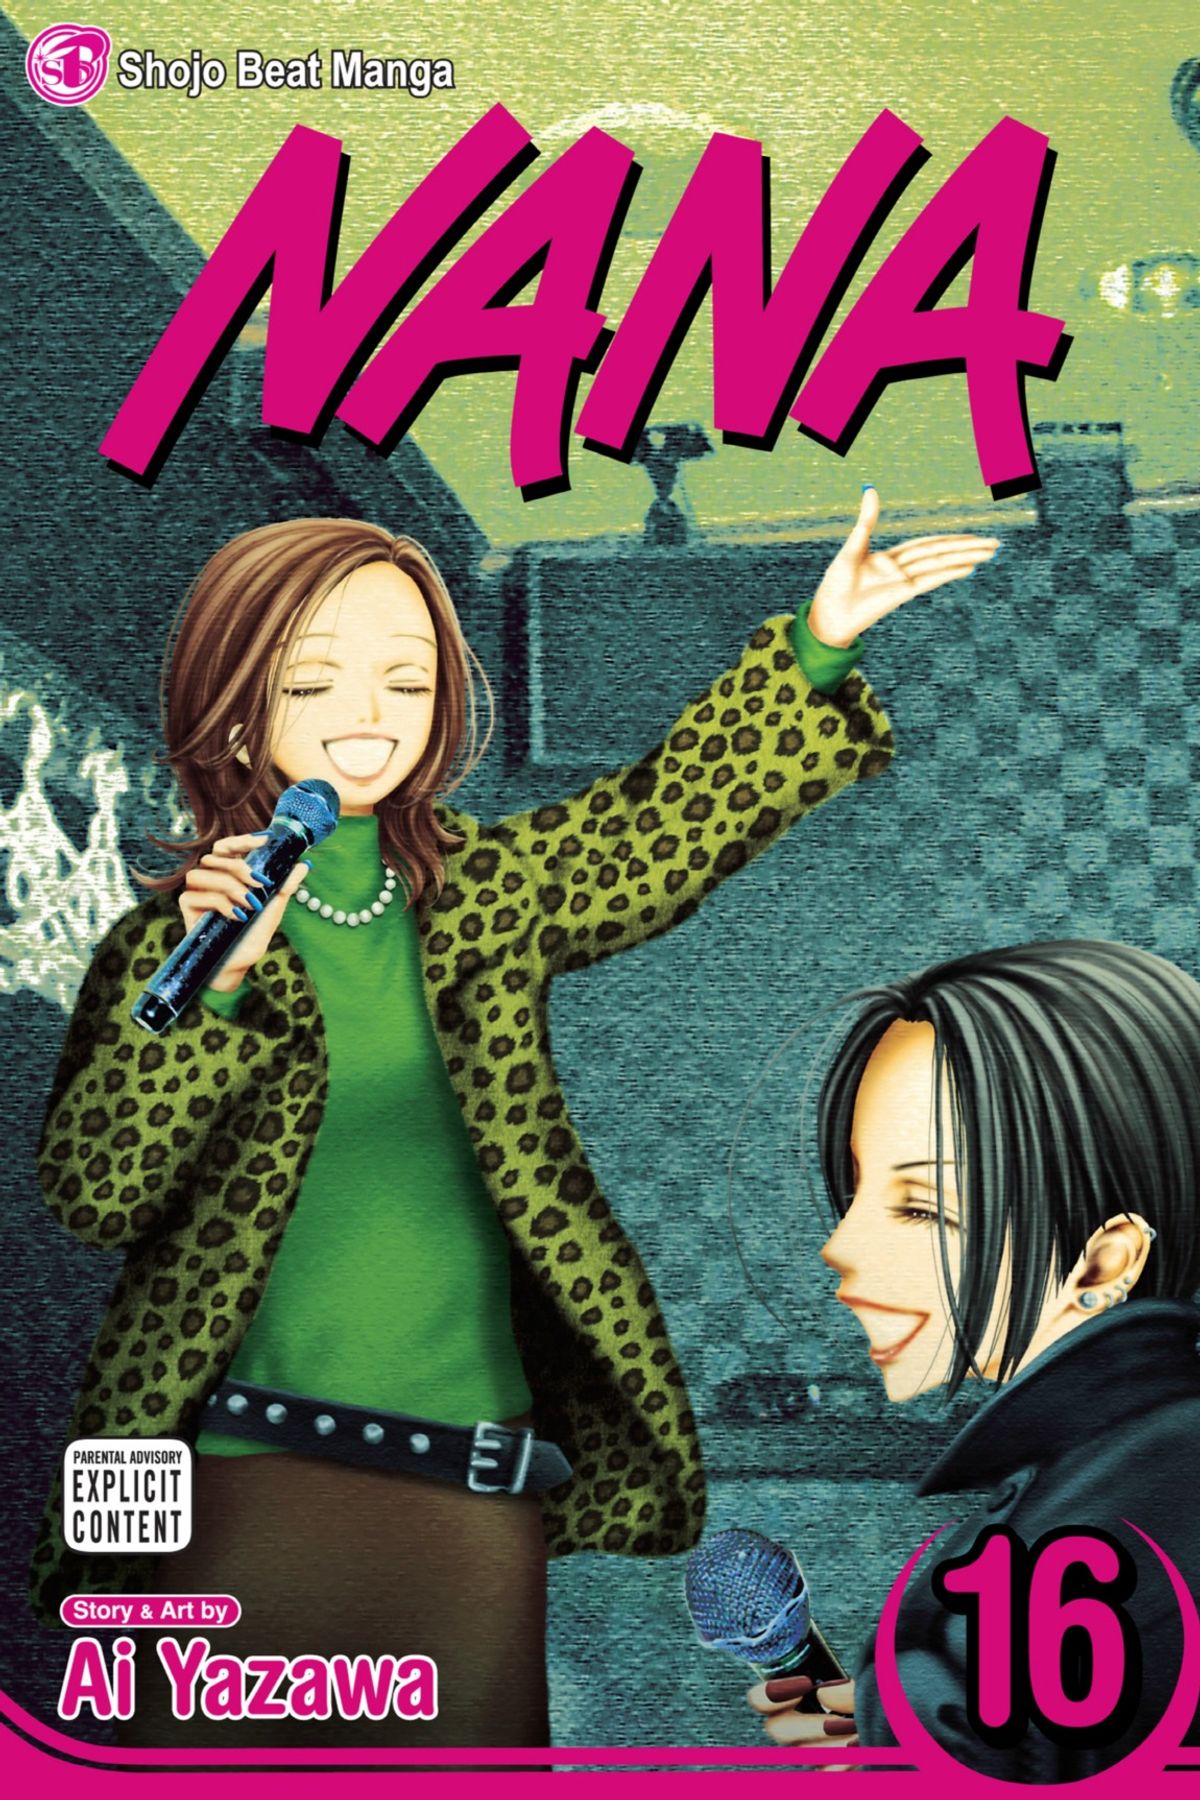 Manga huyền thoại vừa cán mốc hơn 50 triệu bản in